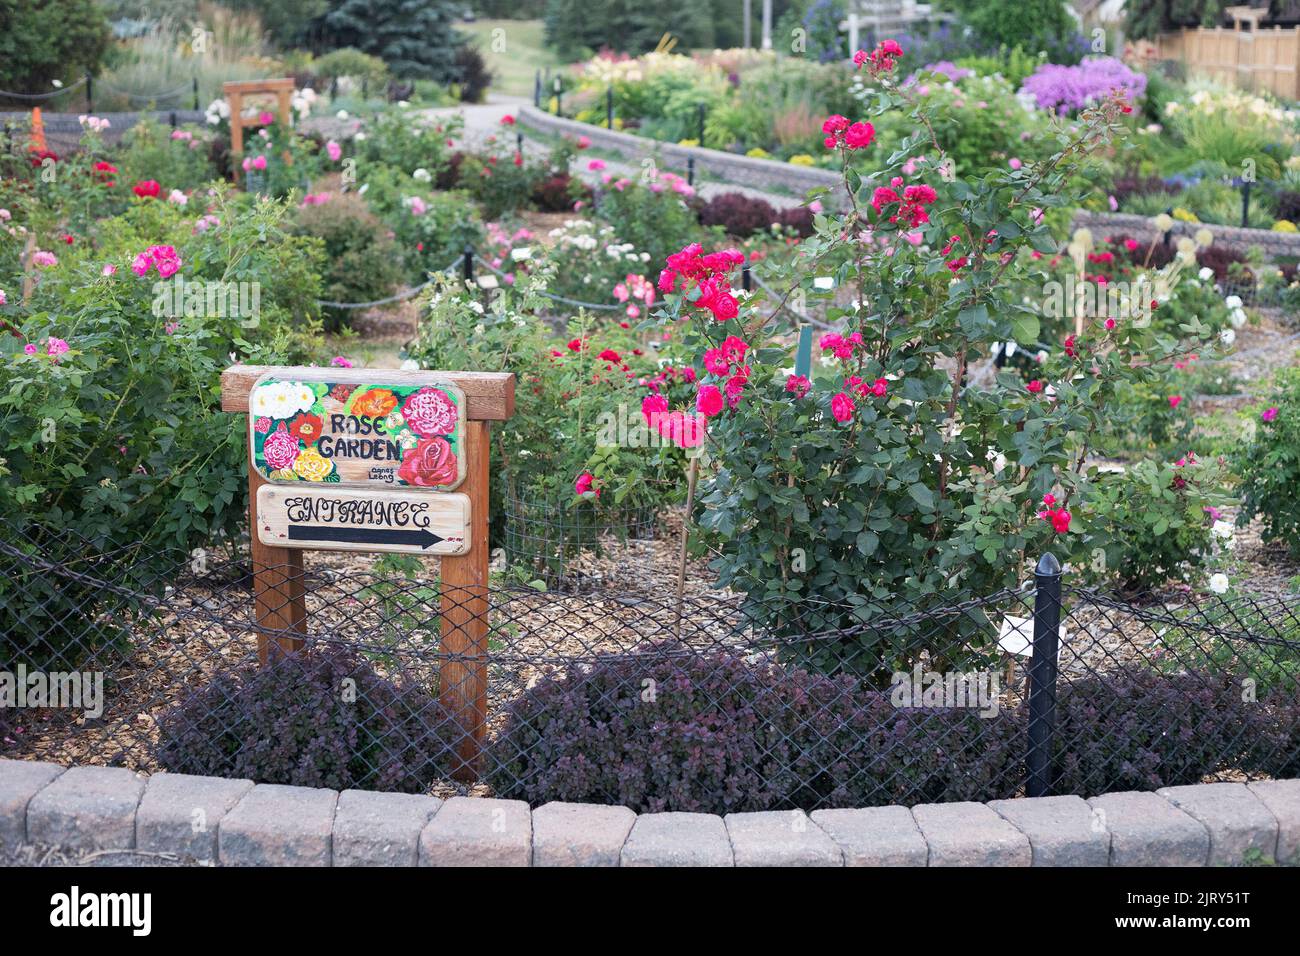 Jardin de roses dans les jardins botaniques de Silver Springs, une communauté de Calgary, Alberta, Canada Banque D'Images